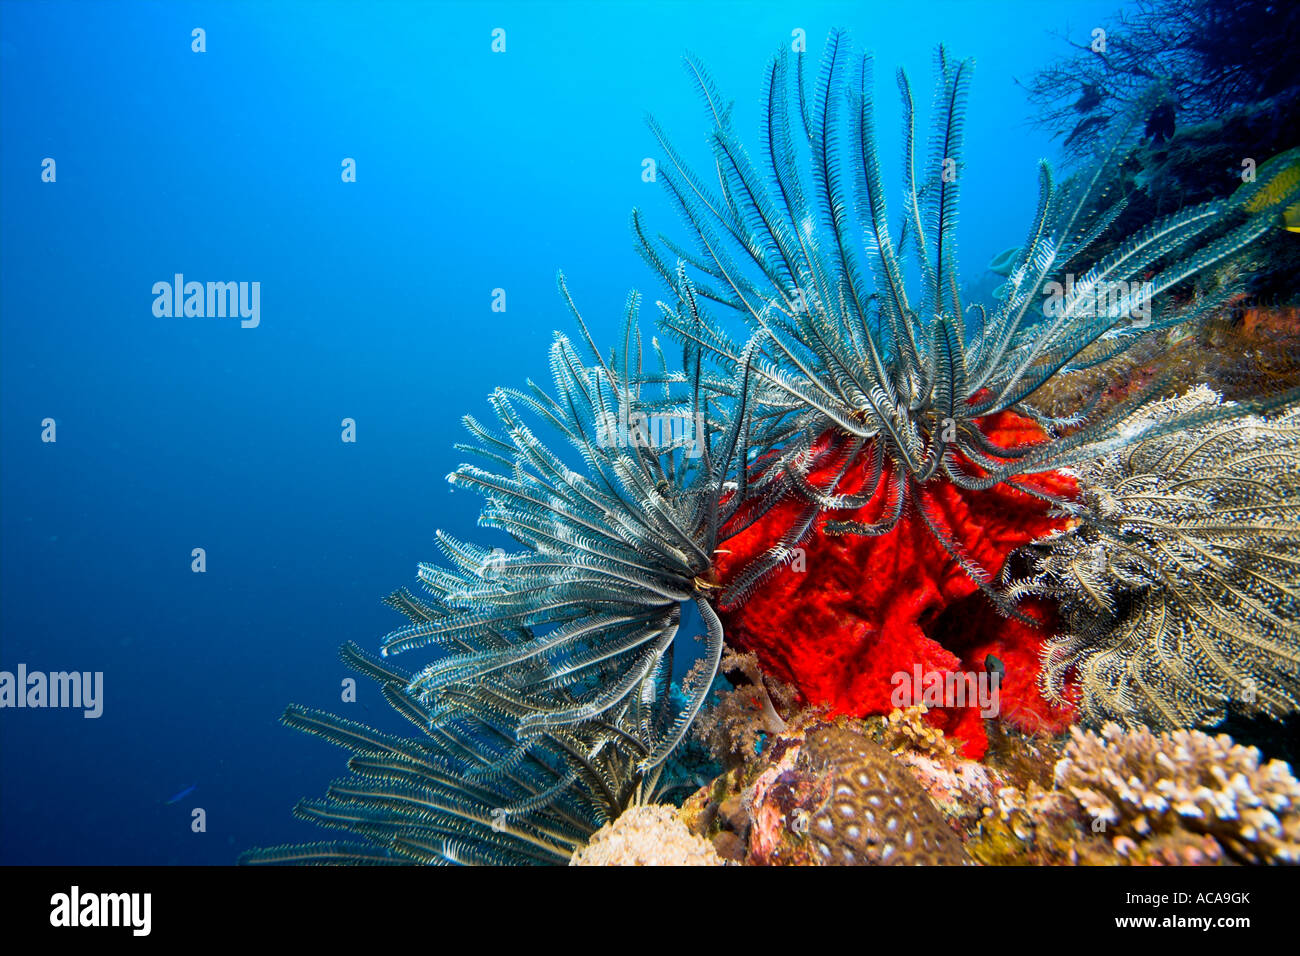 Crinoïde ou feather star dans un récif de corail, Philippines Banque D'Images